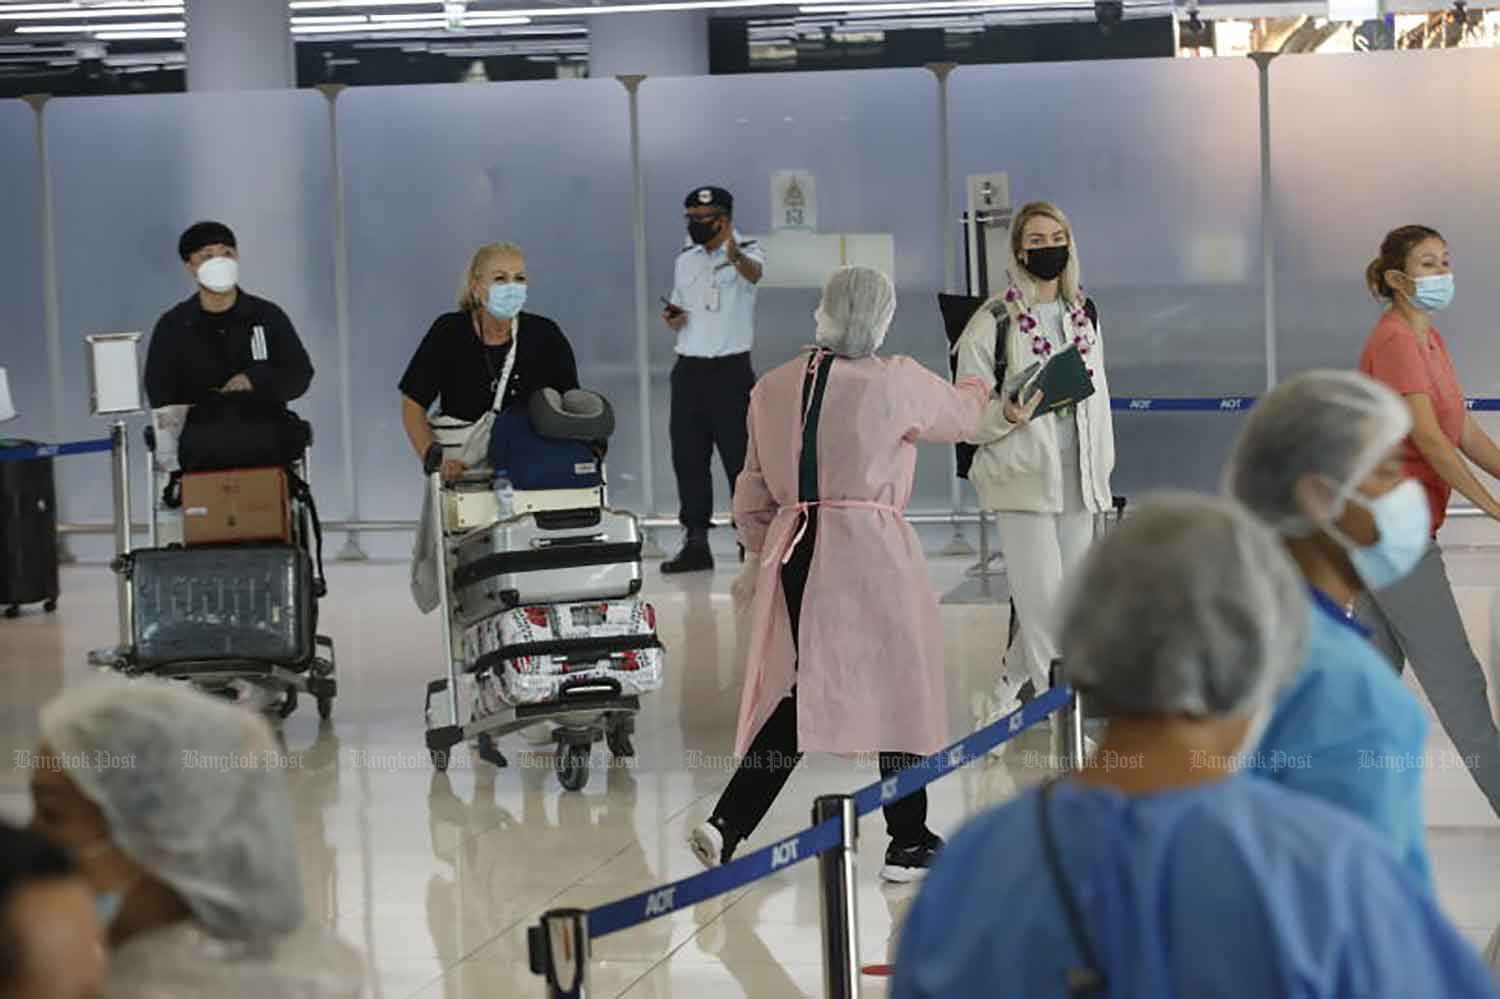 Sân bay Thái Lan áp dụng các biện pháp phòng ngừa dịch bệnh đối với hành khách nhập cảnh. Ảnh: Bangkok Post